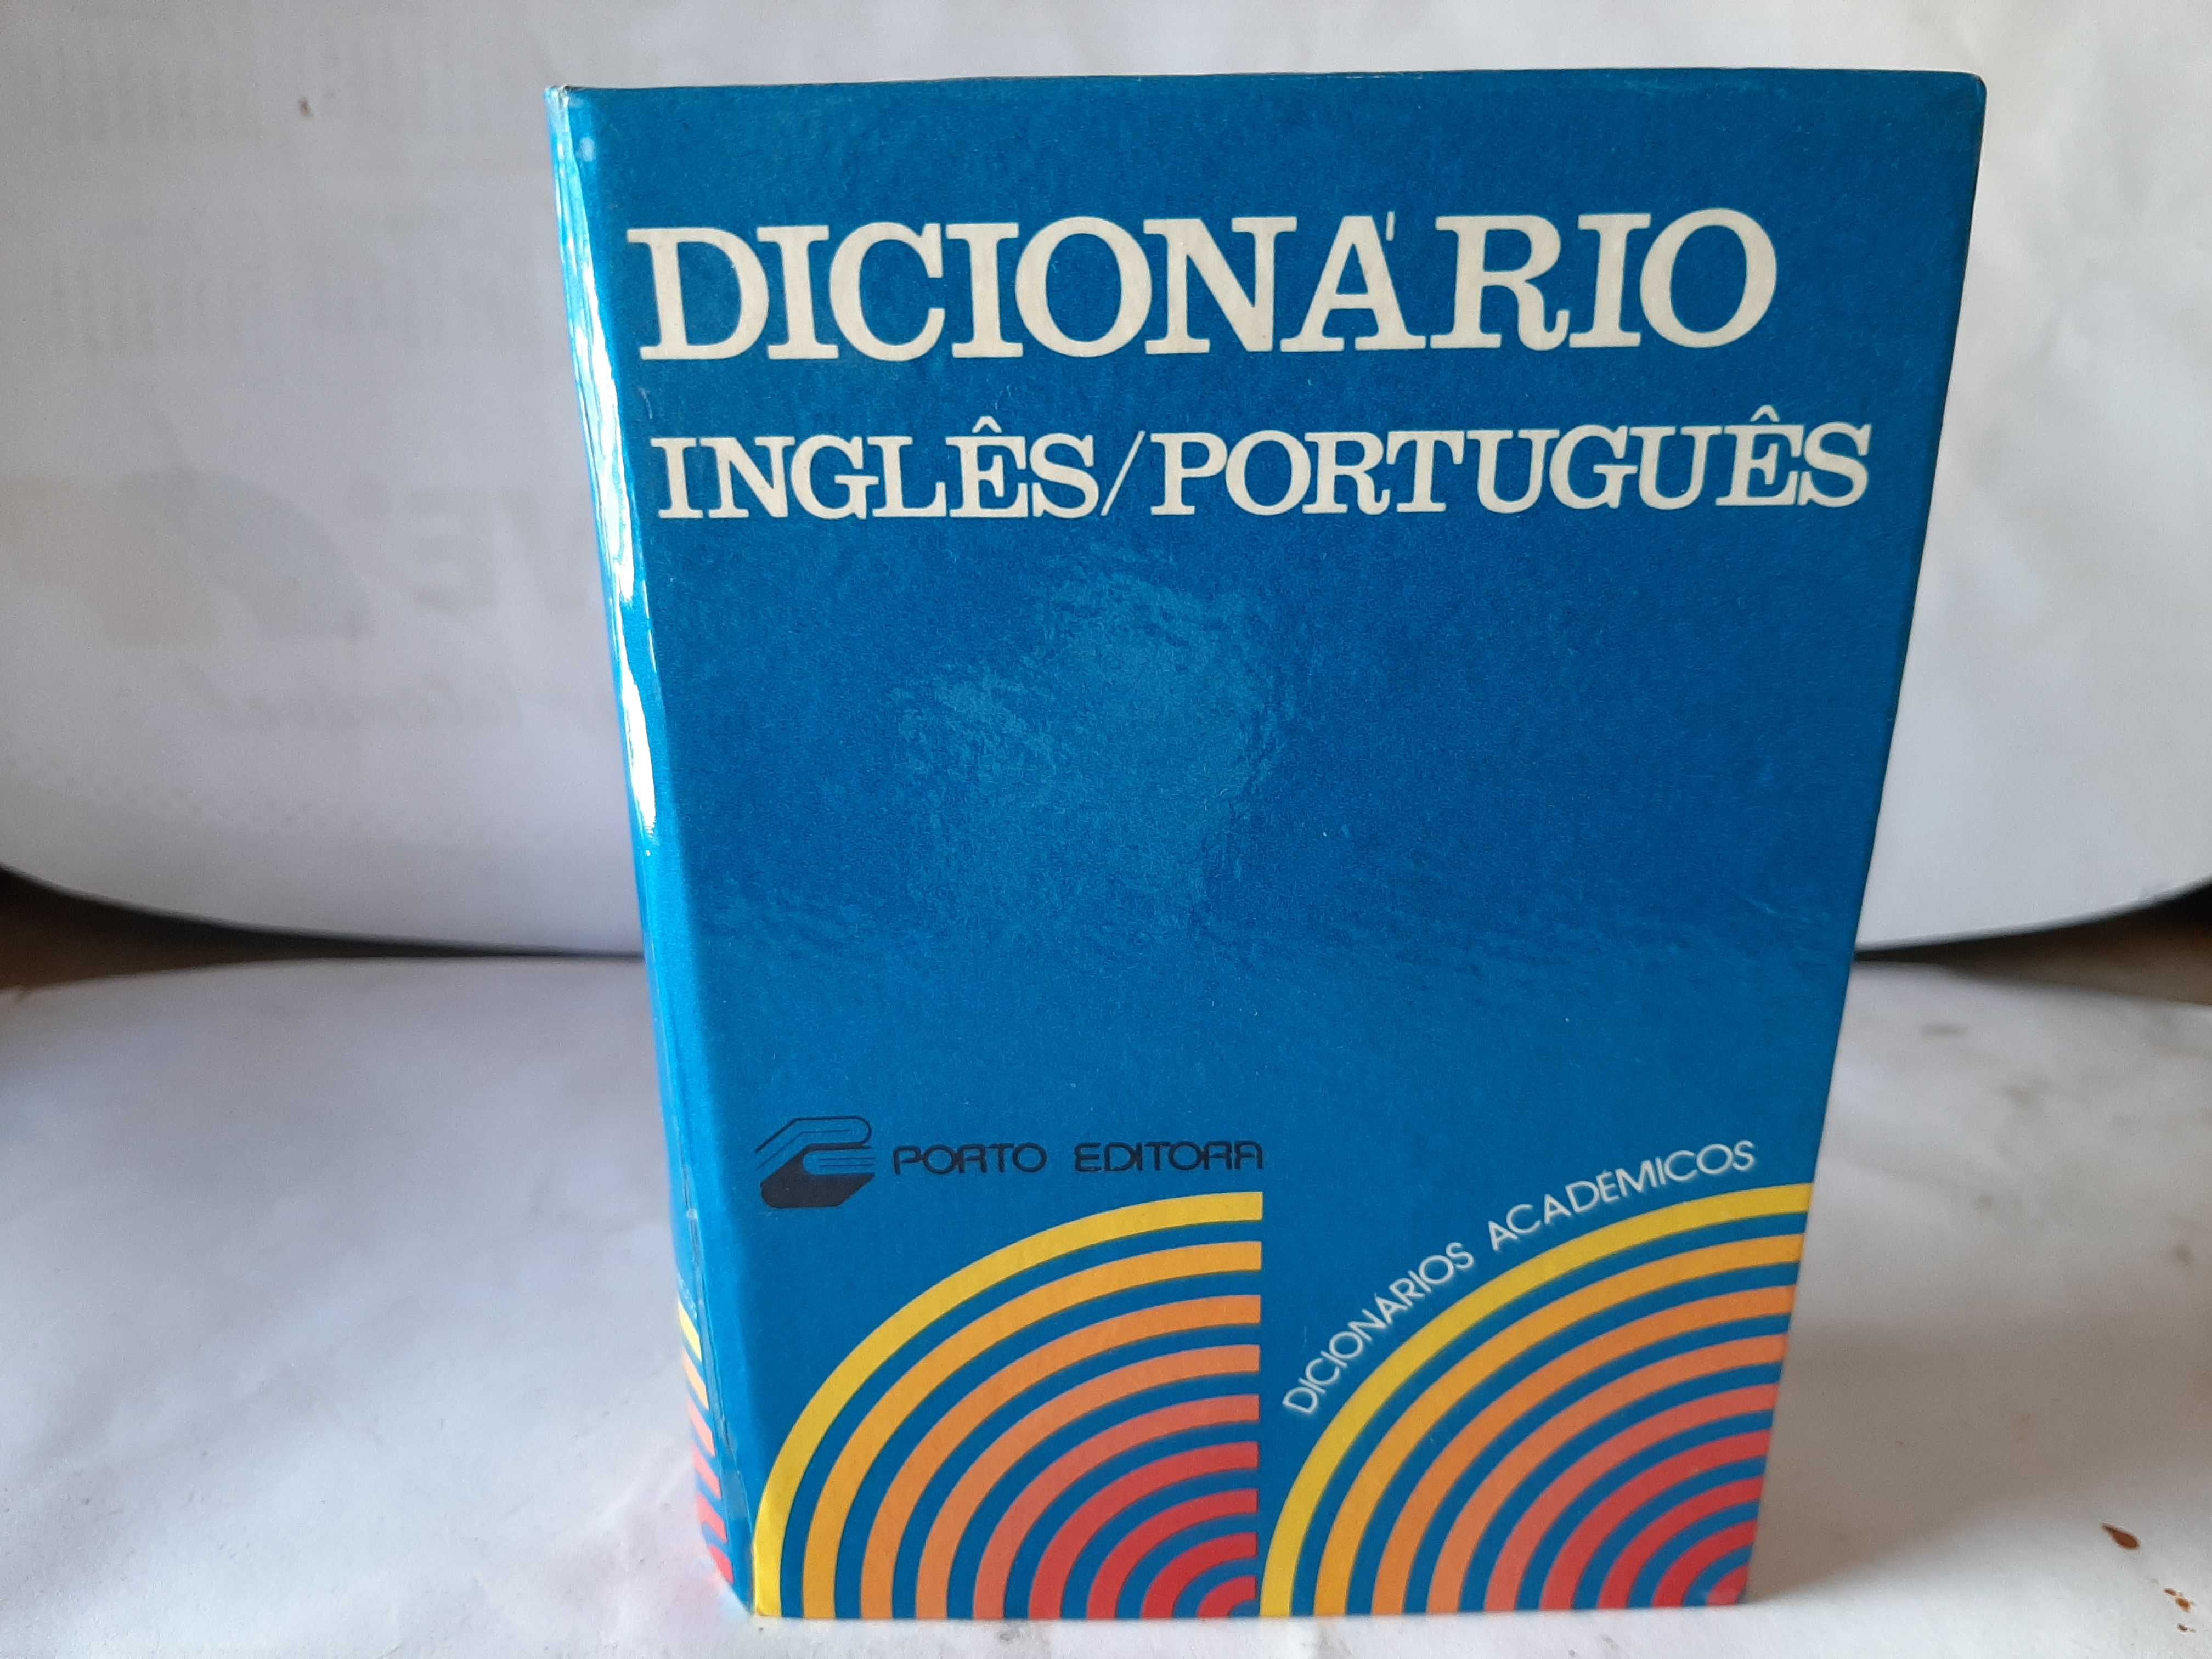 .Dicionario Portugues e Inglês  e Português.em bom estado.